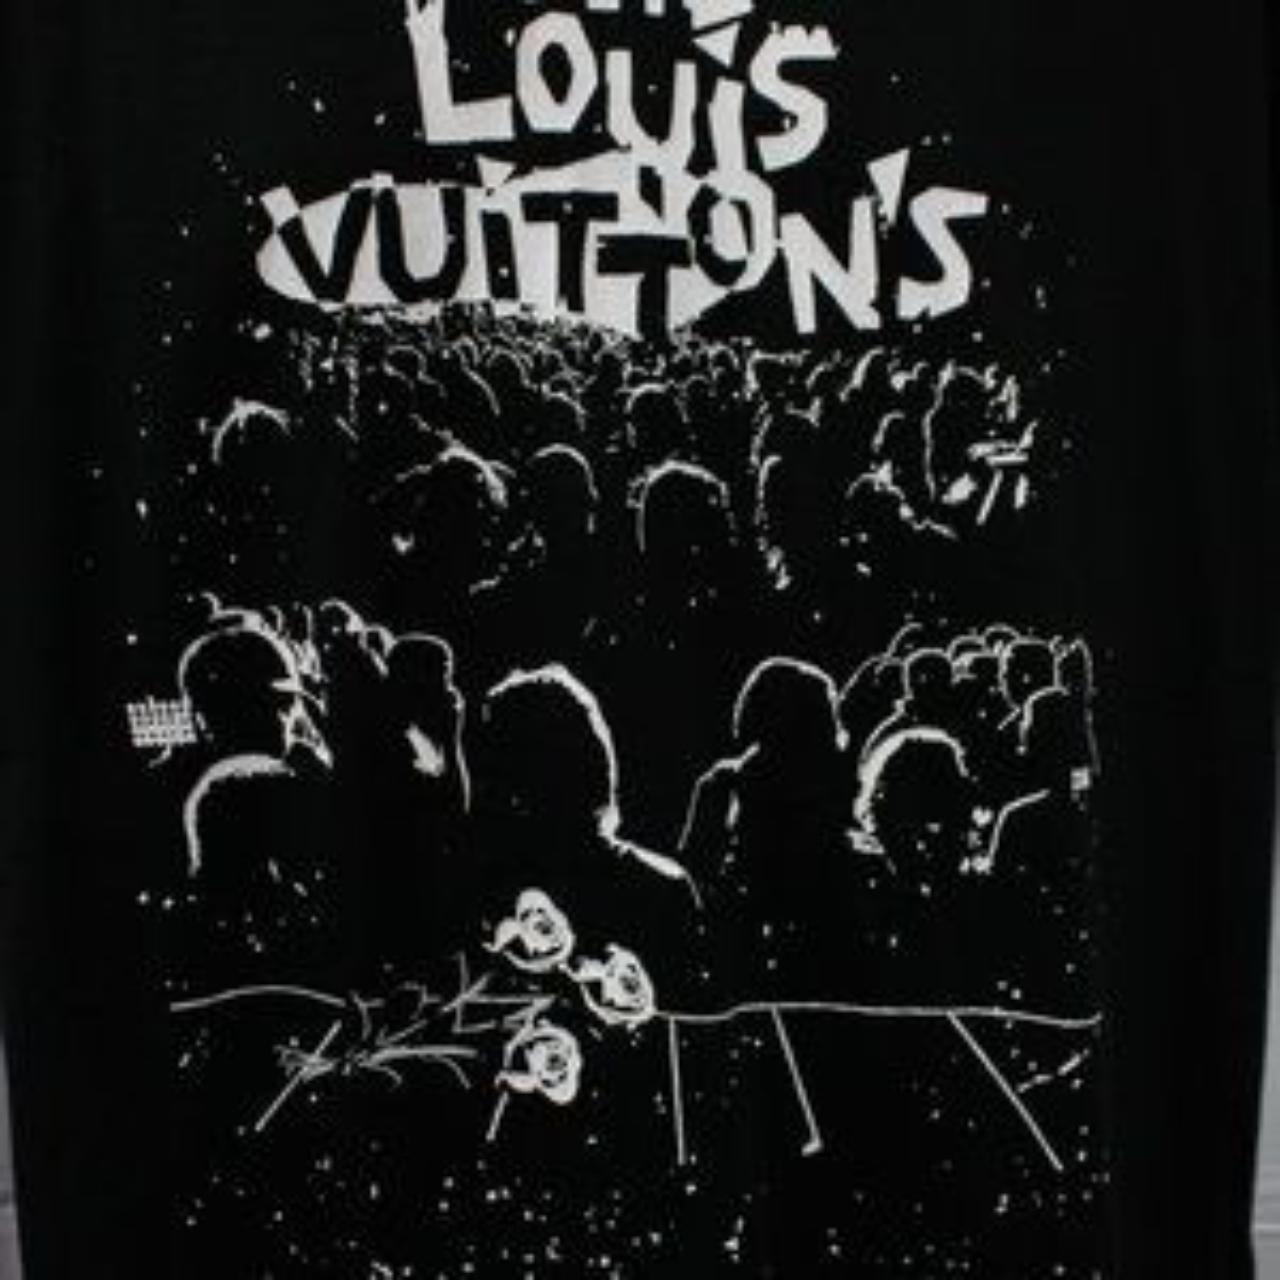 Louis Vuitton shirt ❌SOLD❌ LV summer shirt - Depop